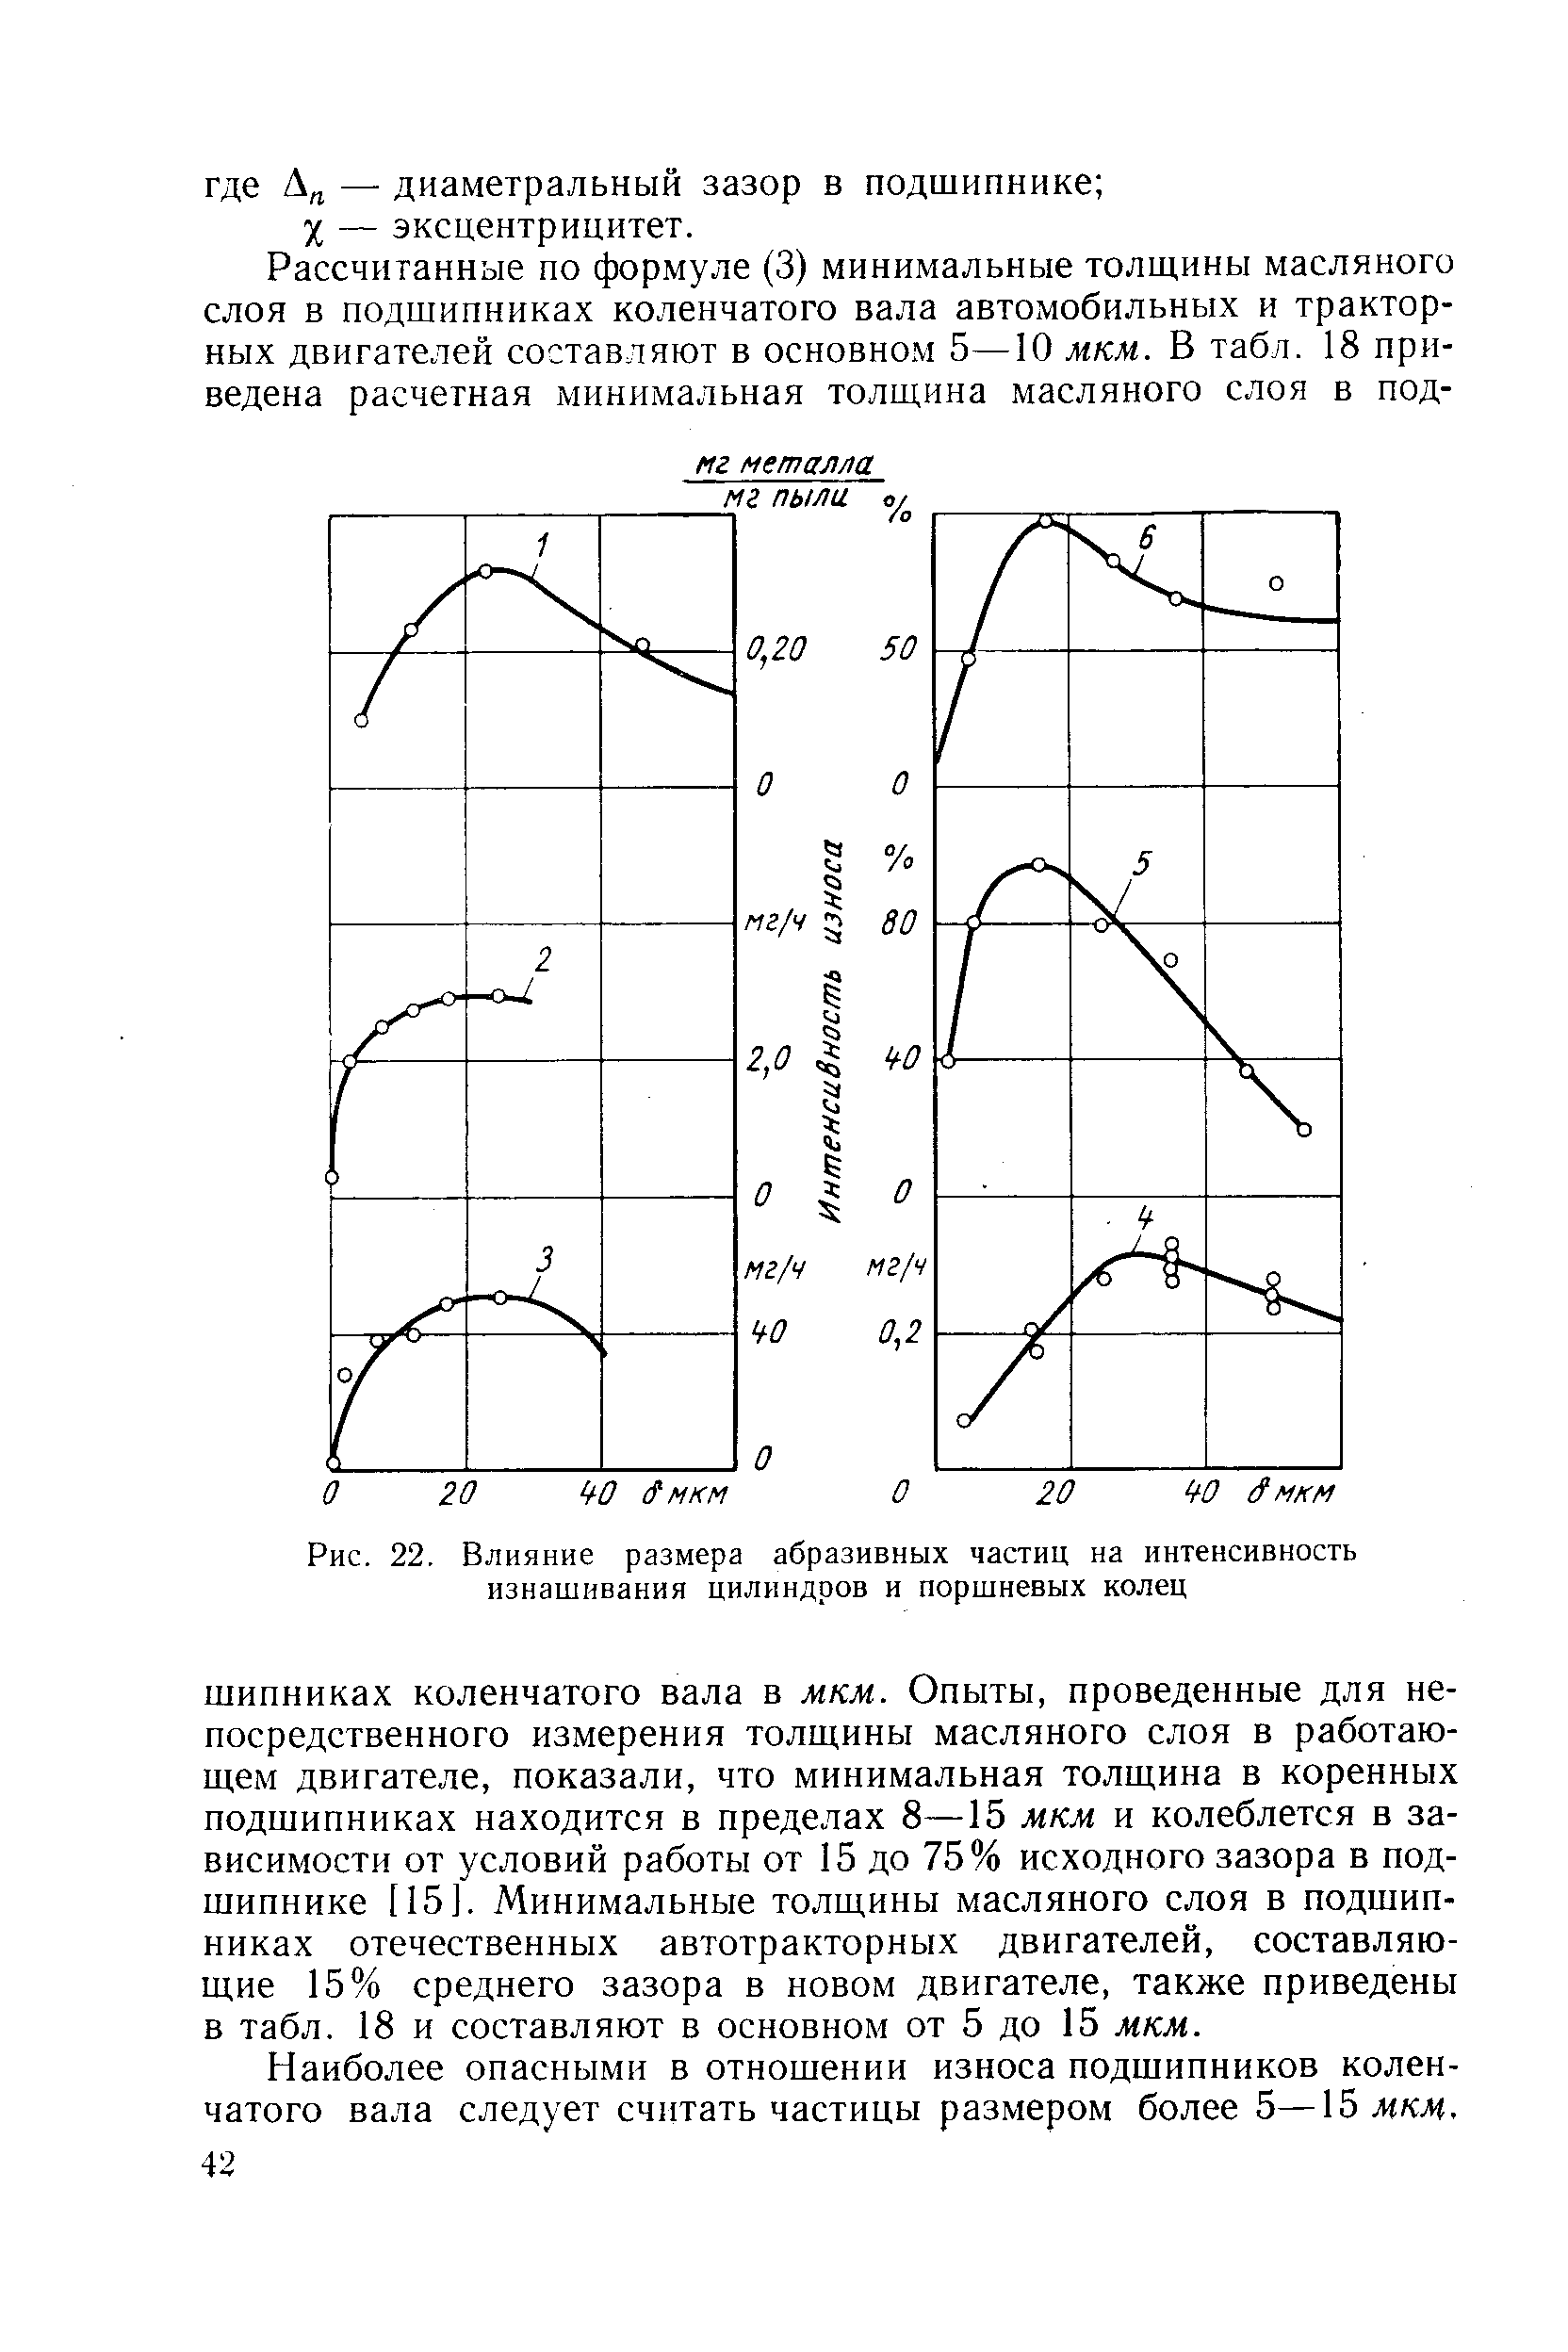 Рис. 22, Влияние размера абразивных частиц на <a href="/info/33873">интенсивность изнашивания</a> цилиндров и поршневых колец
